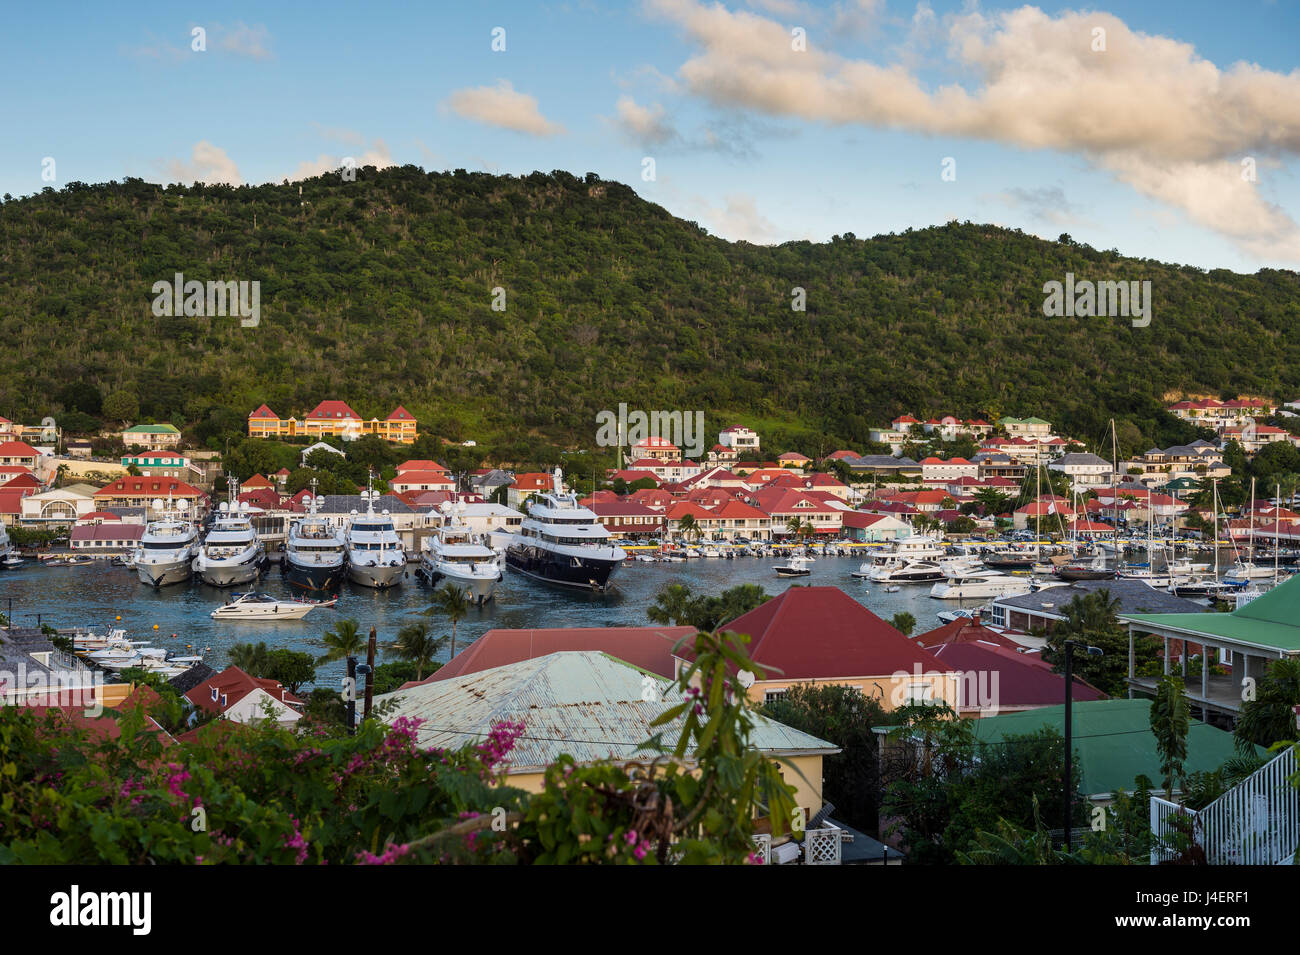 Yates de lujo, en el puerto de Gustavia, Saint Barth (San Bartolomé), Antillas Menores, Las Antillas, Caribe Foto de stock